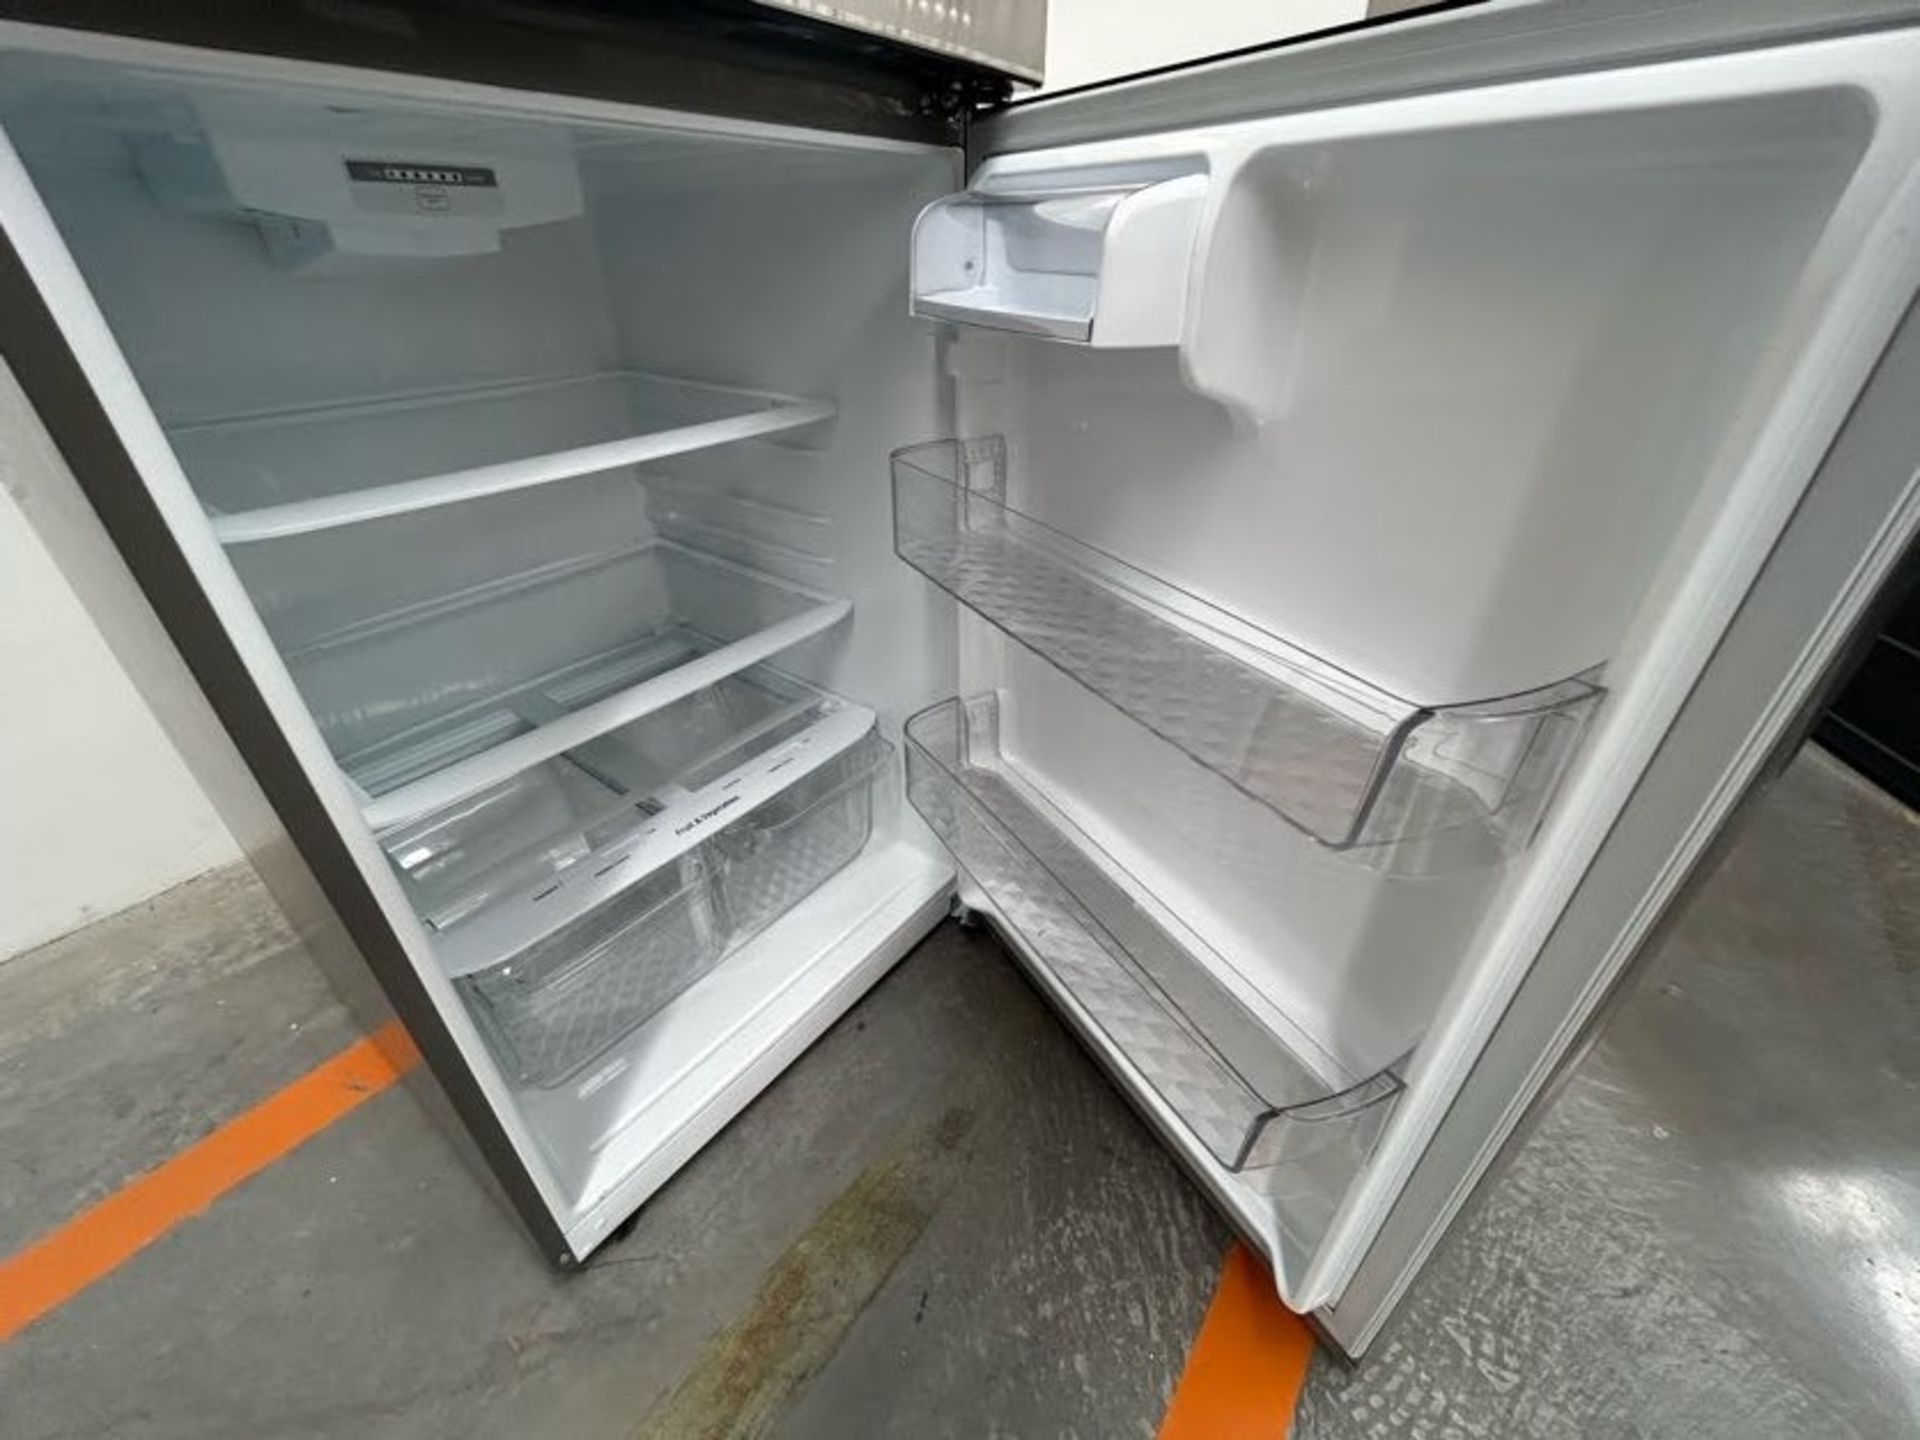 Refrigerador Marca LG, Modelo LT57BPSX, Serie 2Z784, Color GRIS (Equipo de devolución) - Image 5 of 7